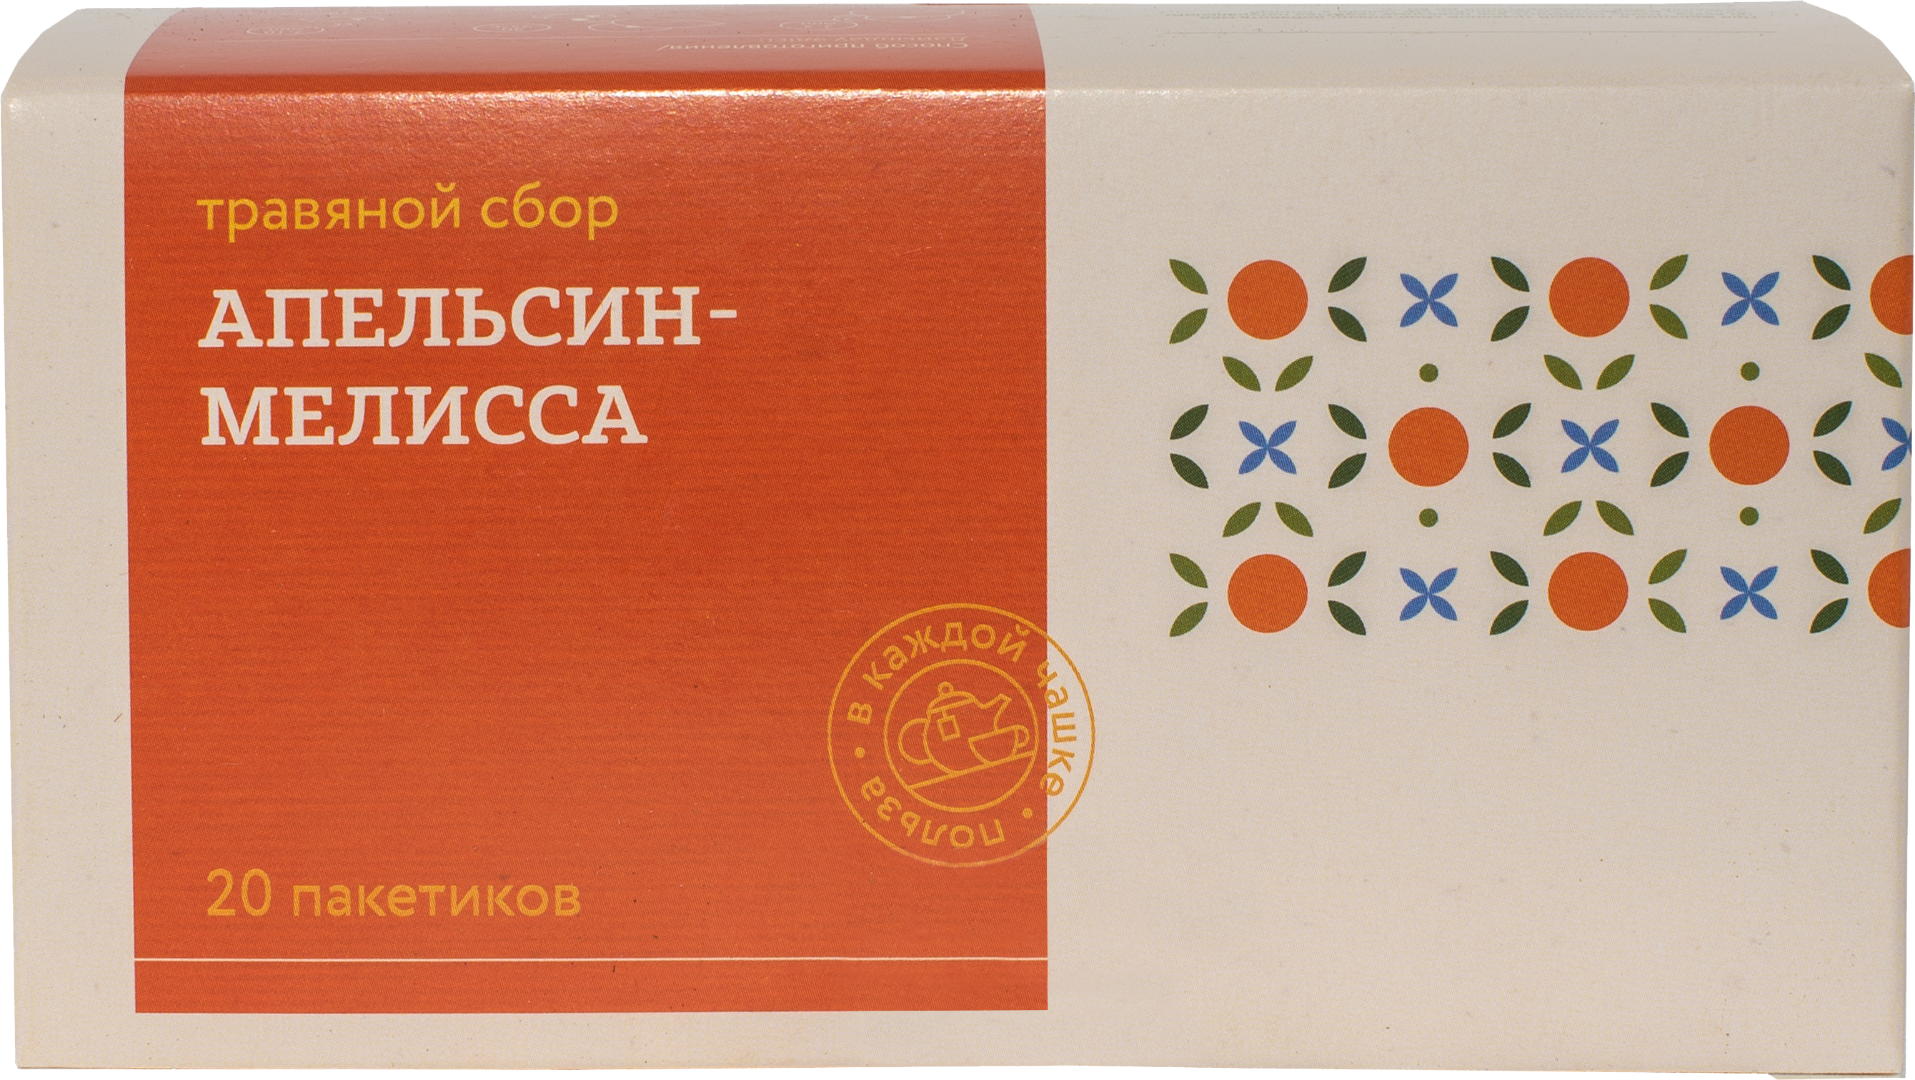 Травяной сбор ТРАВЫ И ПЧЕЛЫ с апельсином и мелиссой 40 г 202г6шт картонная коробка